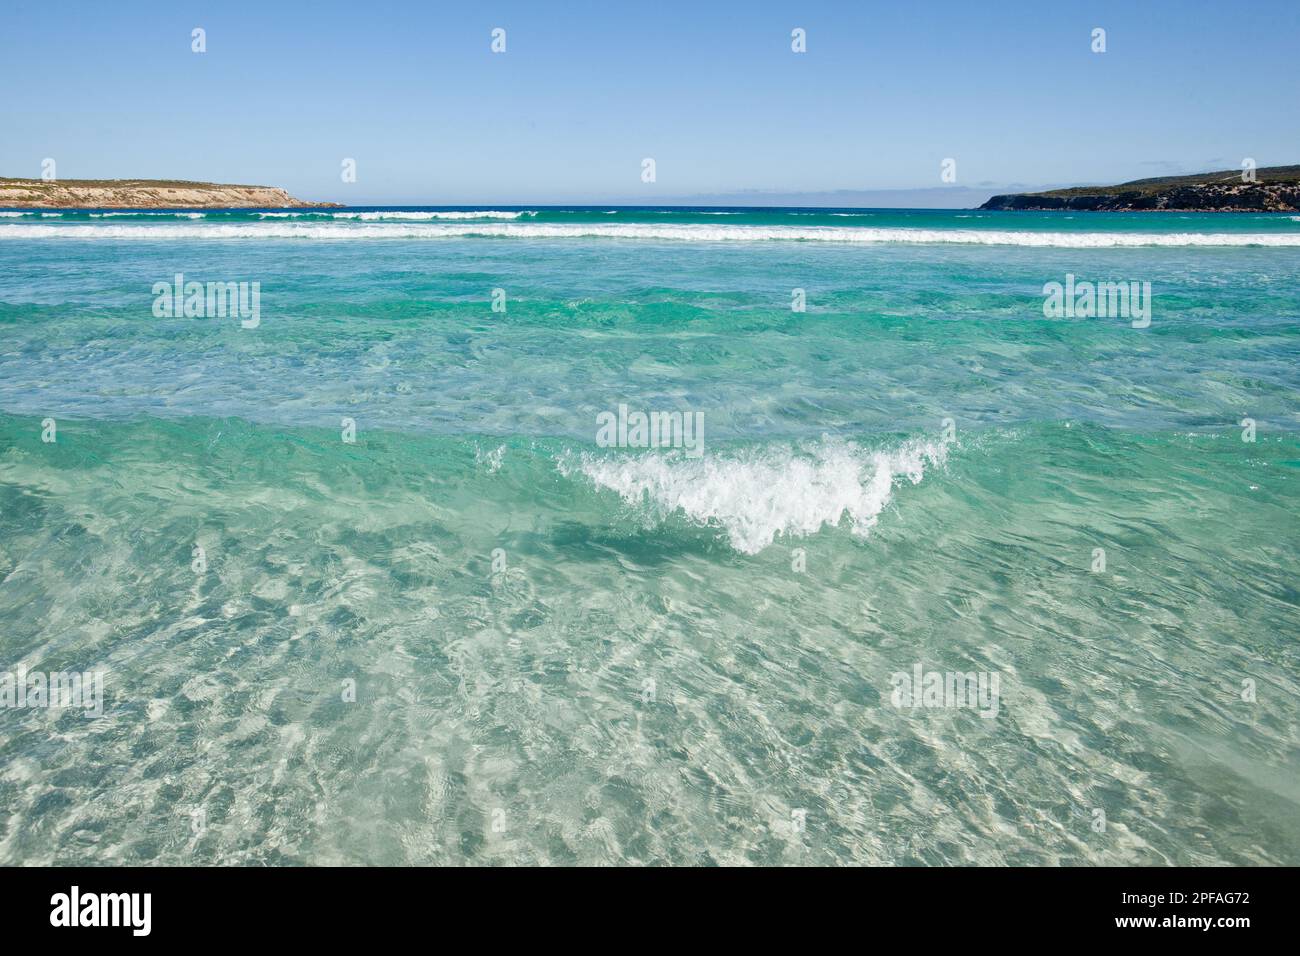 Sauberes klares Wasser mit einer kleinen Welle, die in Fishery Bay South Australia aufbrach. Stockfoto